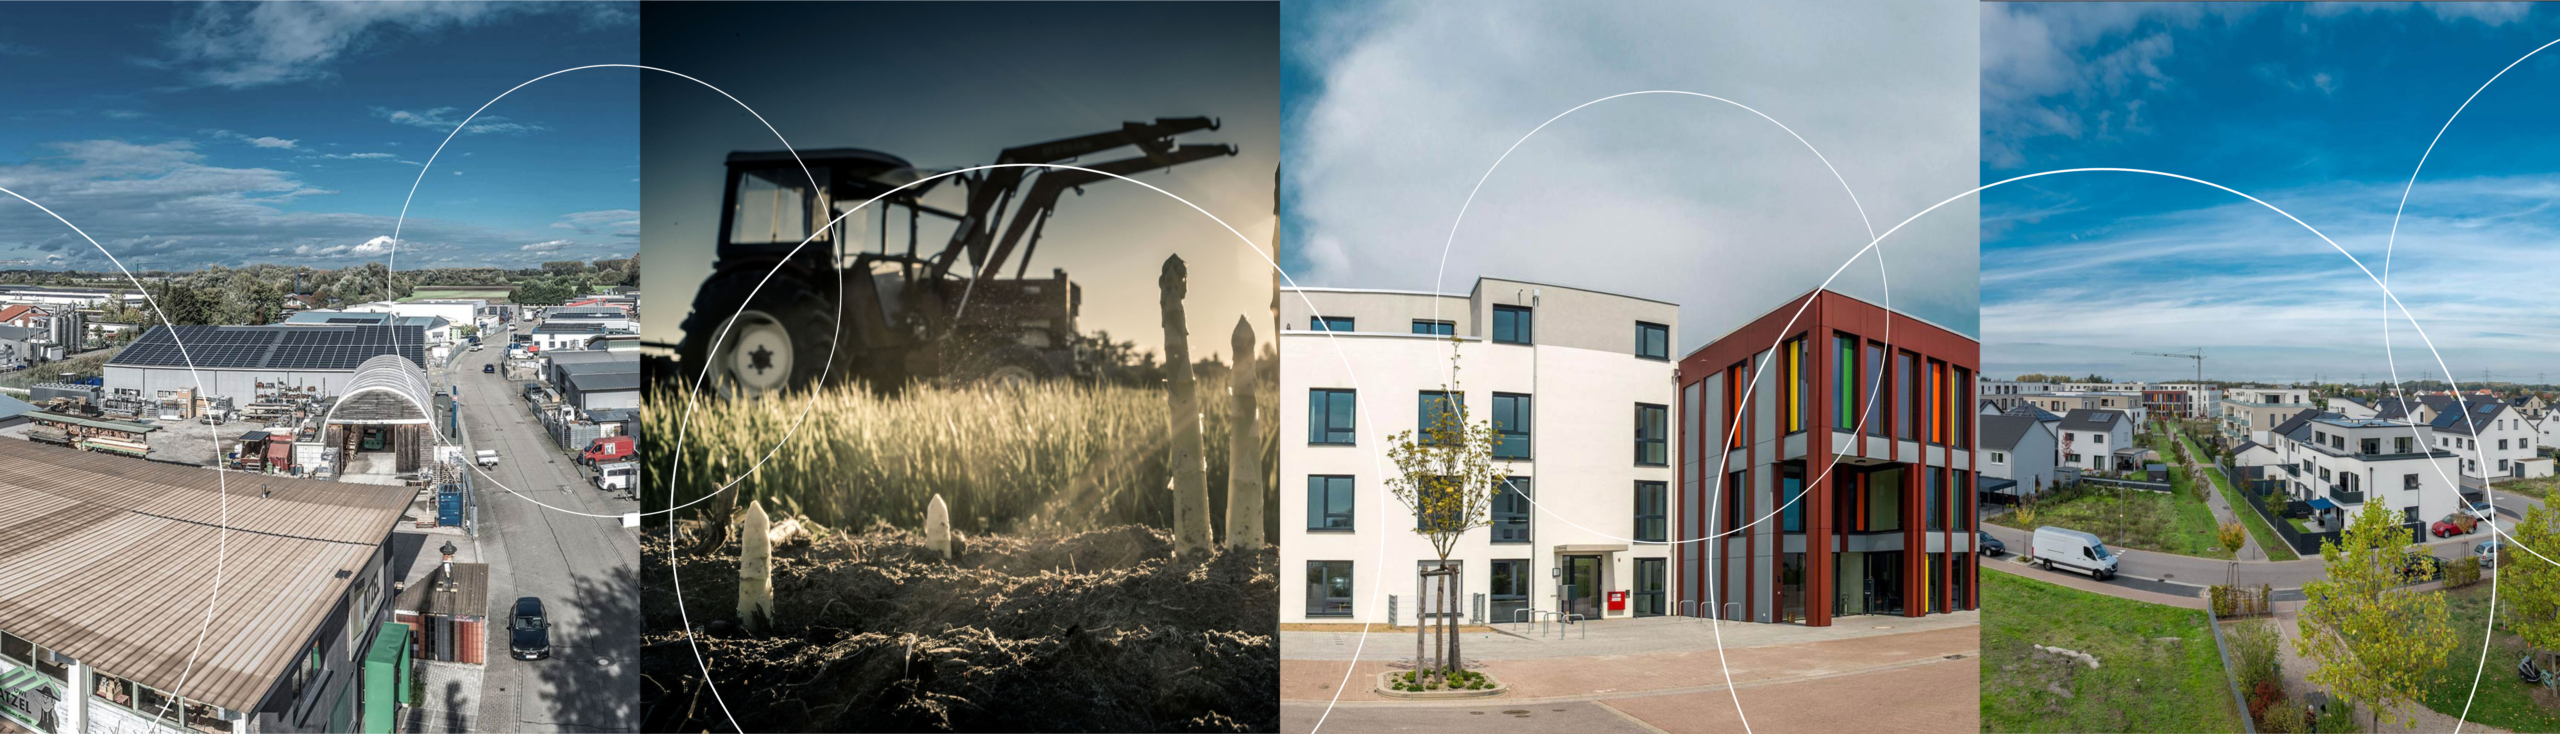 Bildcollage mit Bilder von Gebäuden eines Gewerbegebiets, einem Traktor auf einem Spargelfeld, einem Gebäude einer Pflegeeinrichtung sowie einem Neubaugebiets